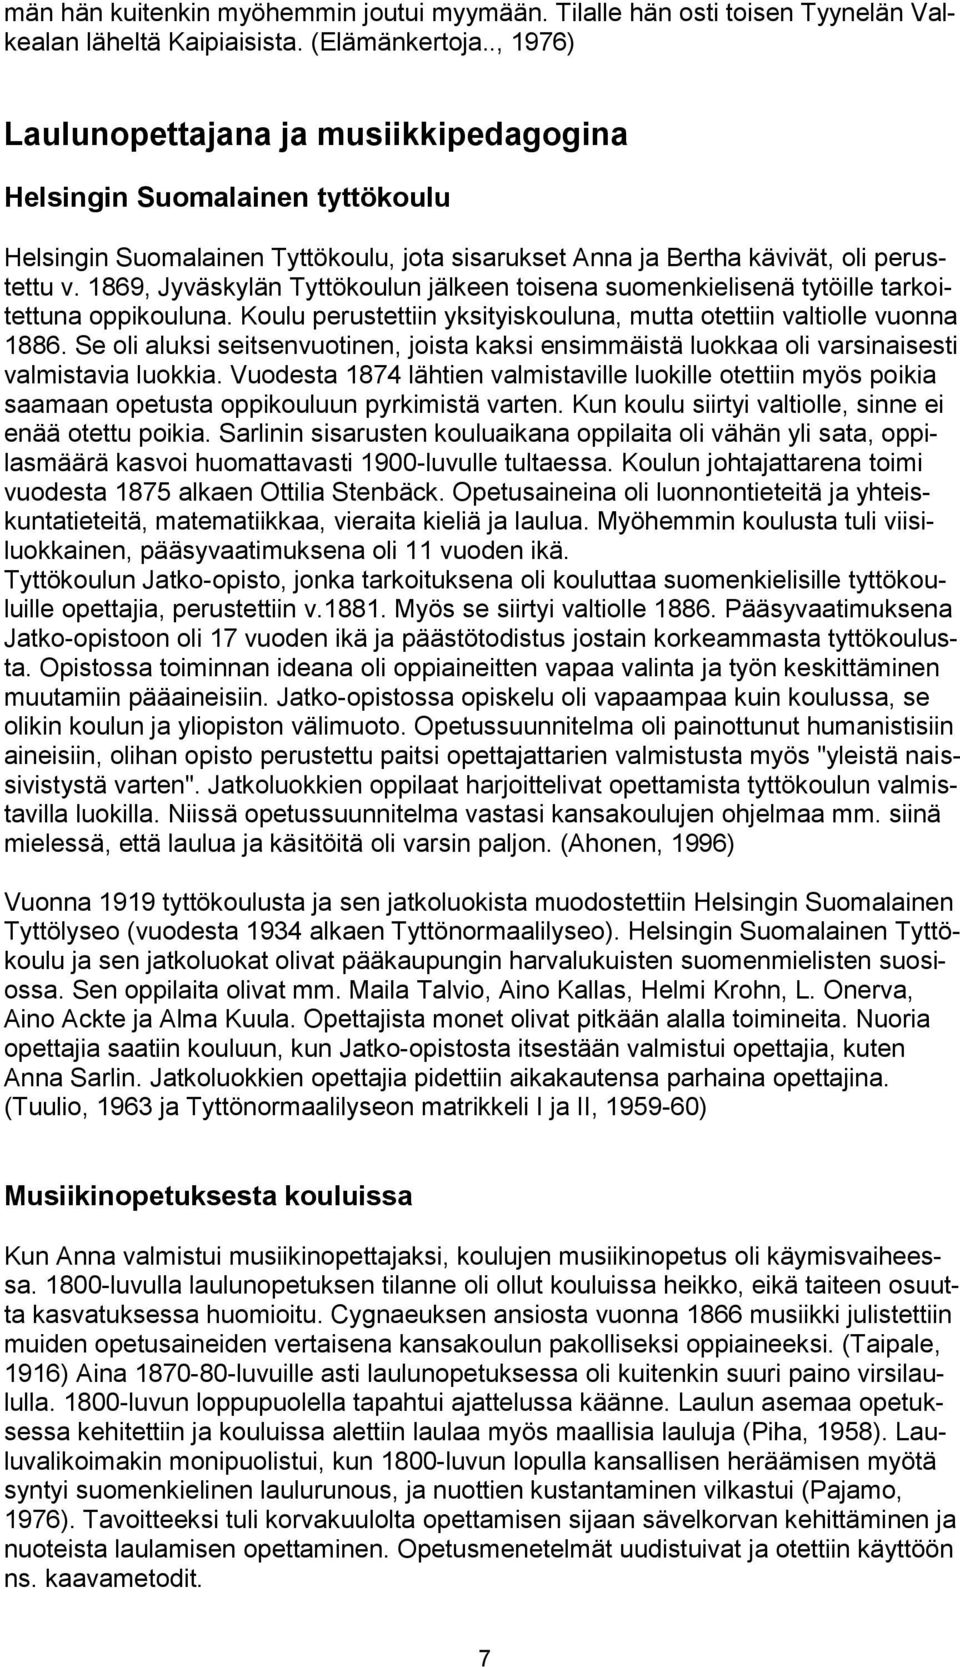 1869, Jyväskylän Tyttökoulun jälkeen toisena suomenkielisenä tytöille tarkoitettuna oppikouluna. Koulu perustettiin yksityiskouluna, mutta otettiin valtiolle vuonna 1886.